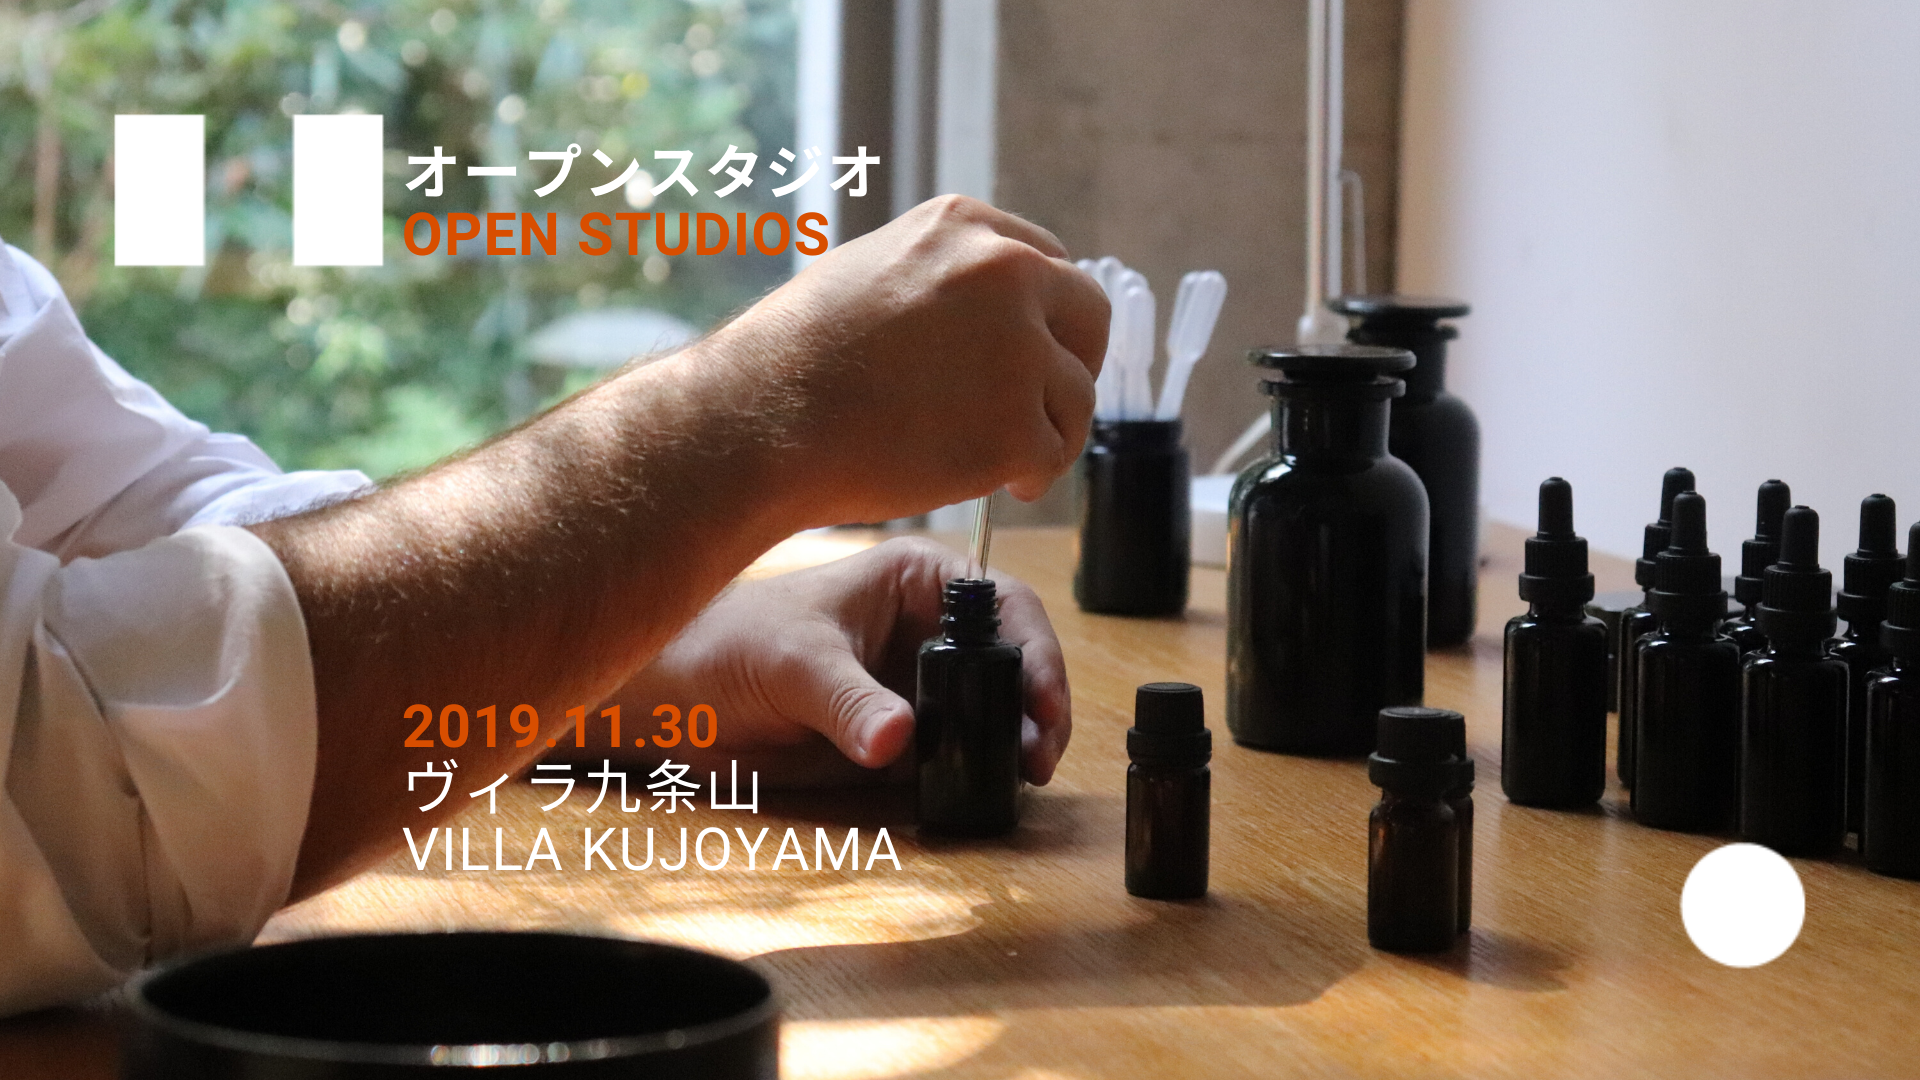 オープンスタジオ OPEN STUDIOS 2019.11.30 ヴィラ九条山 VILLA KUJOYAMA